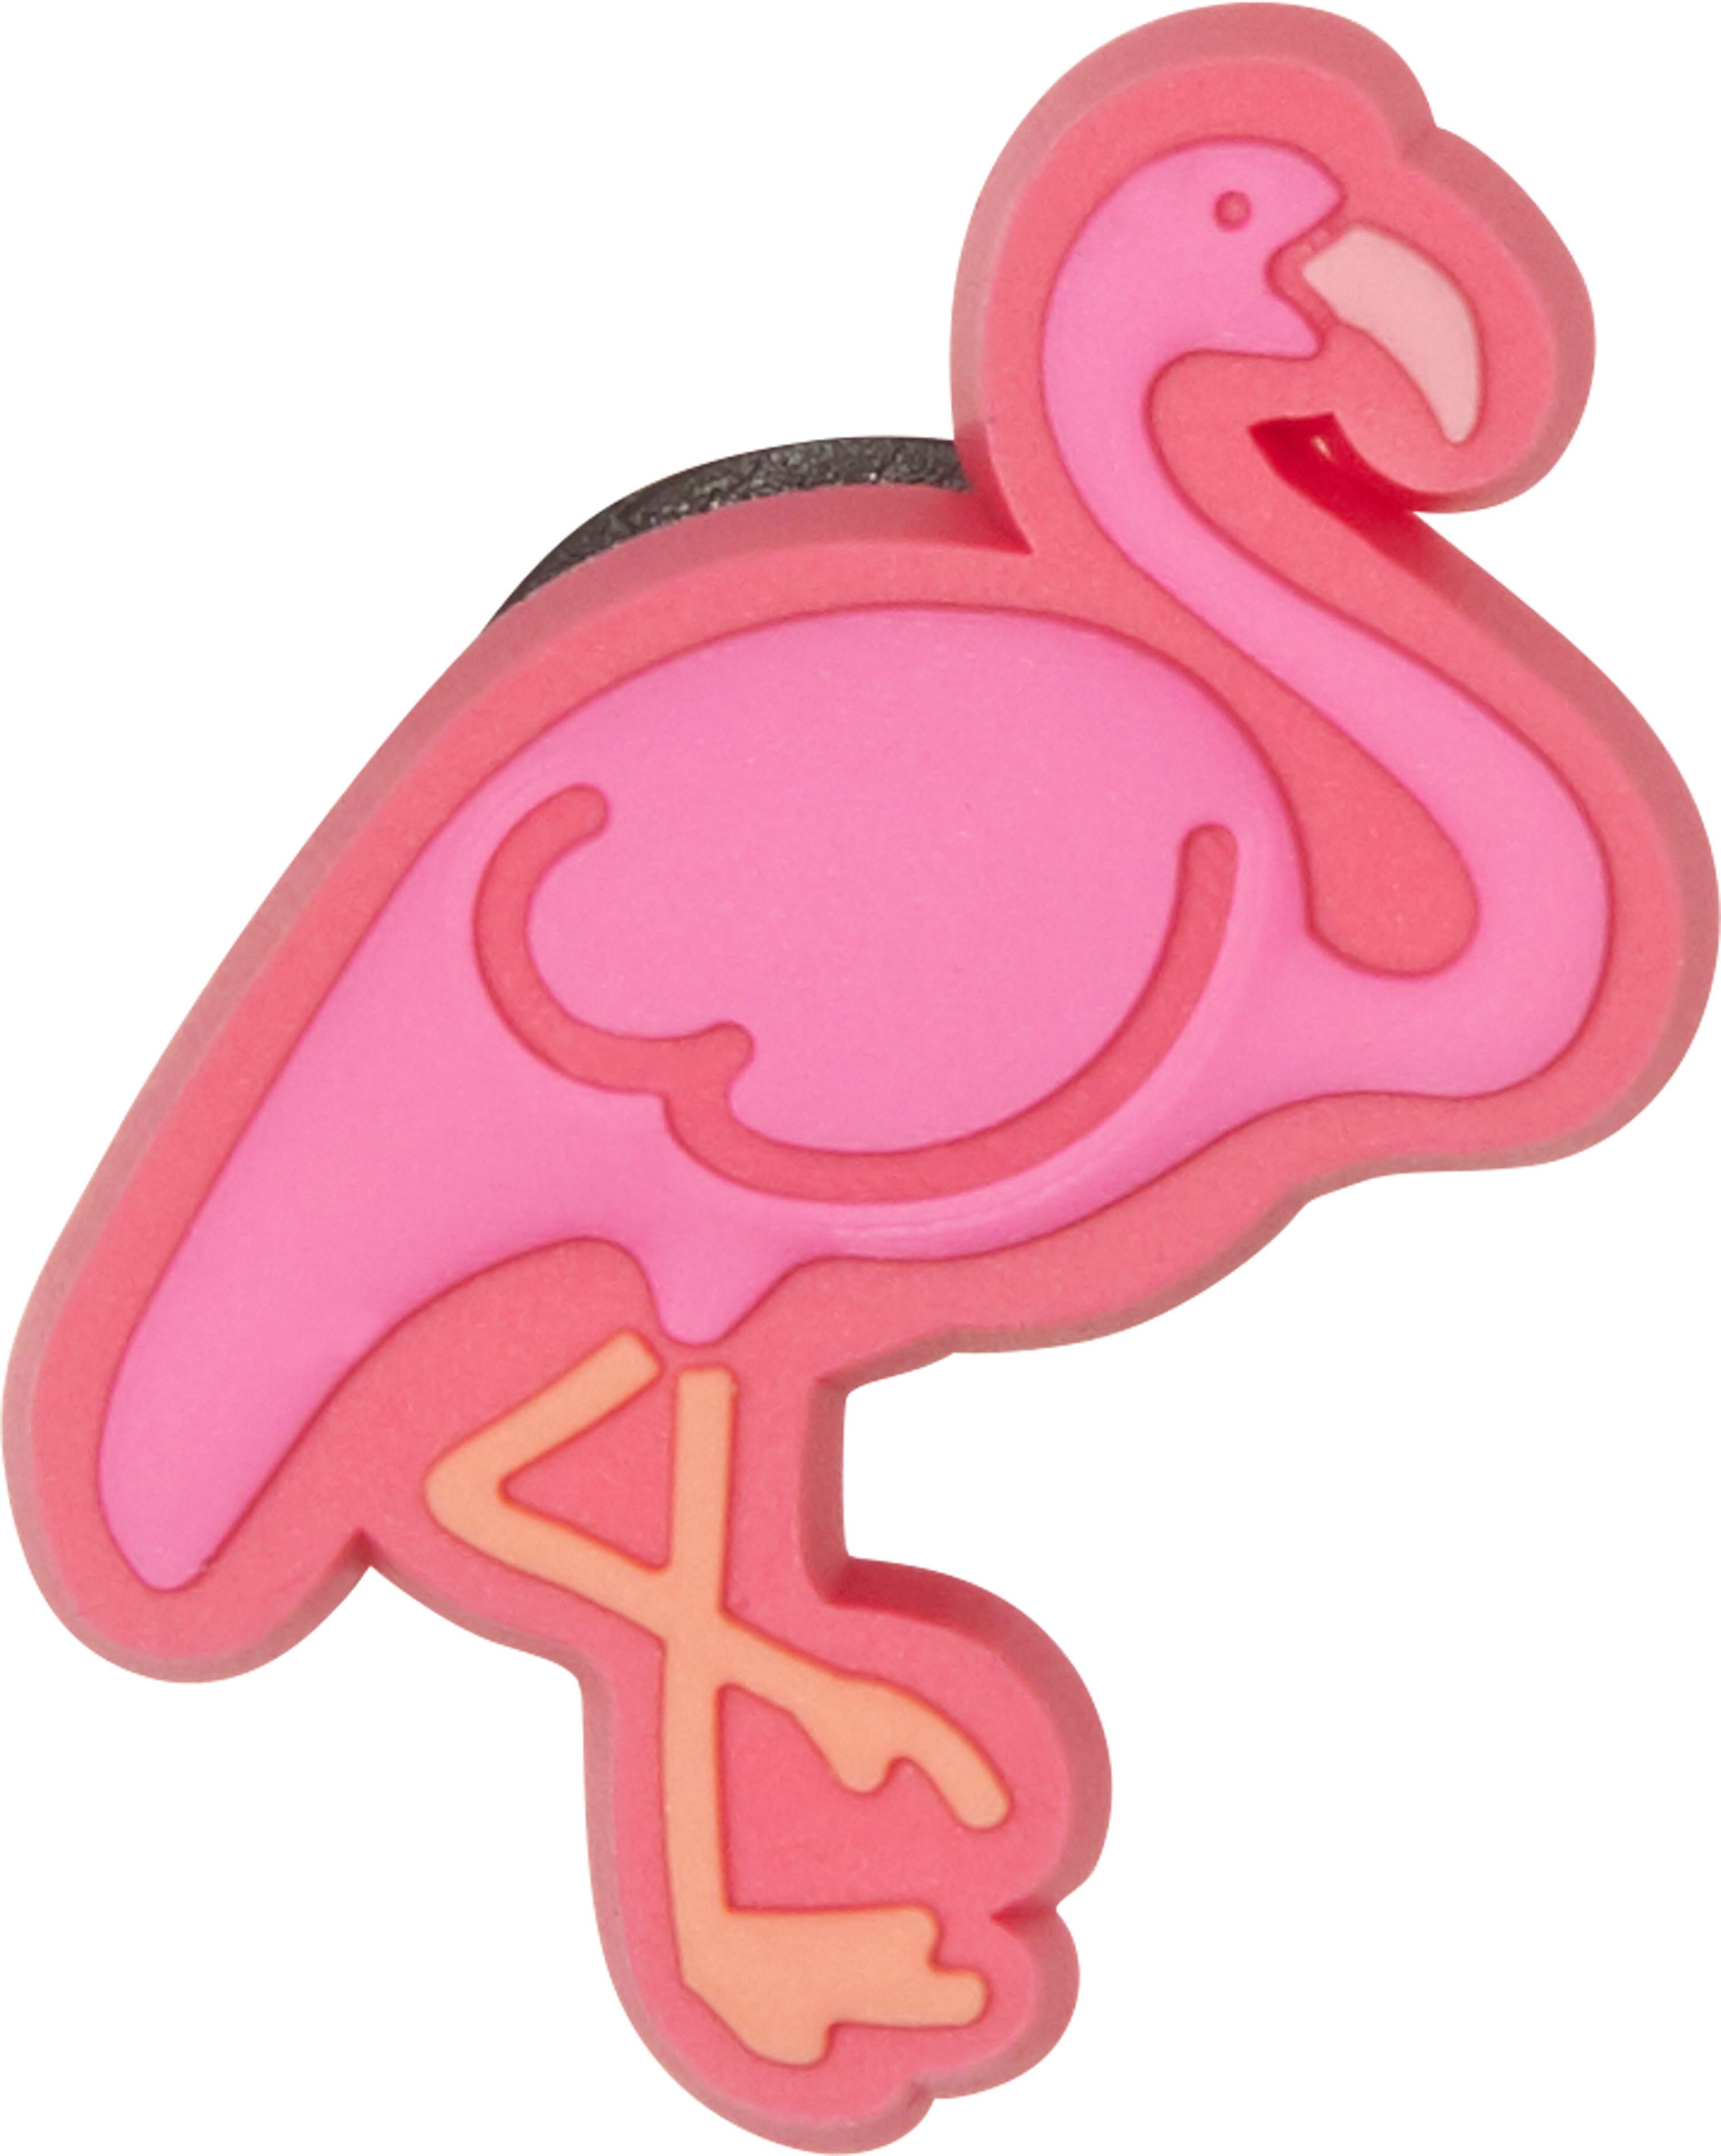 flamingo jibbitz